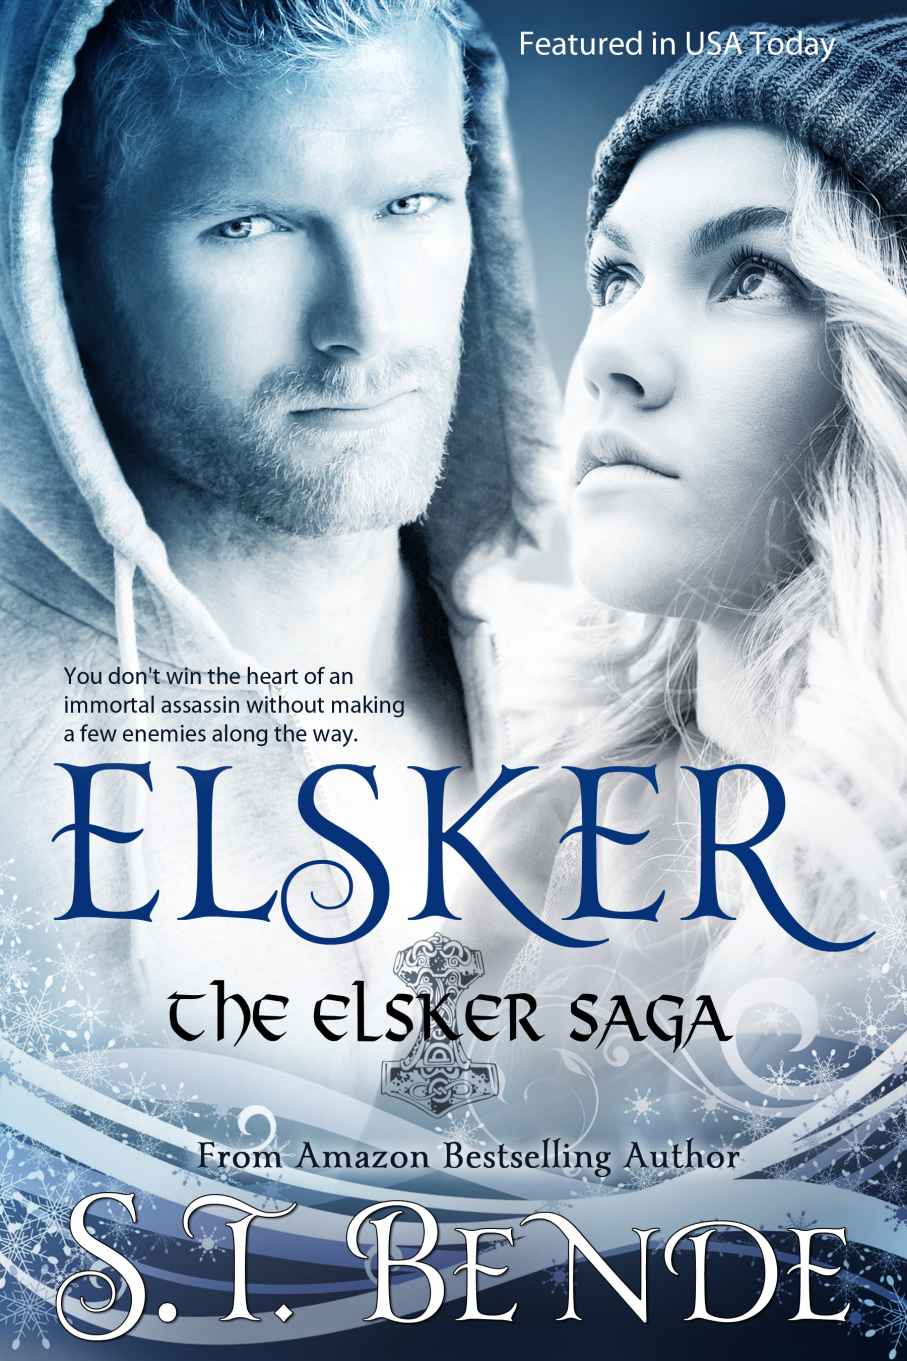 Elsker - The Elsker Saga